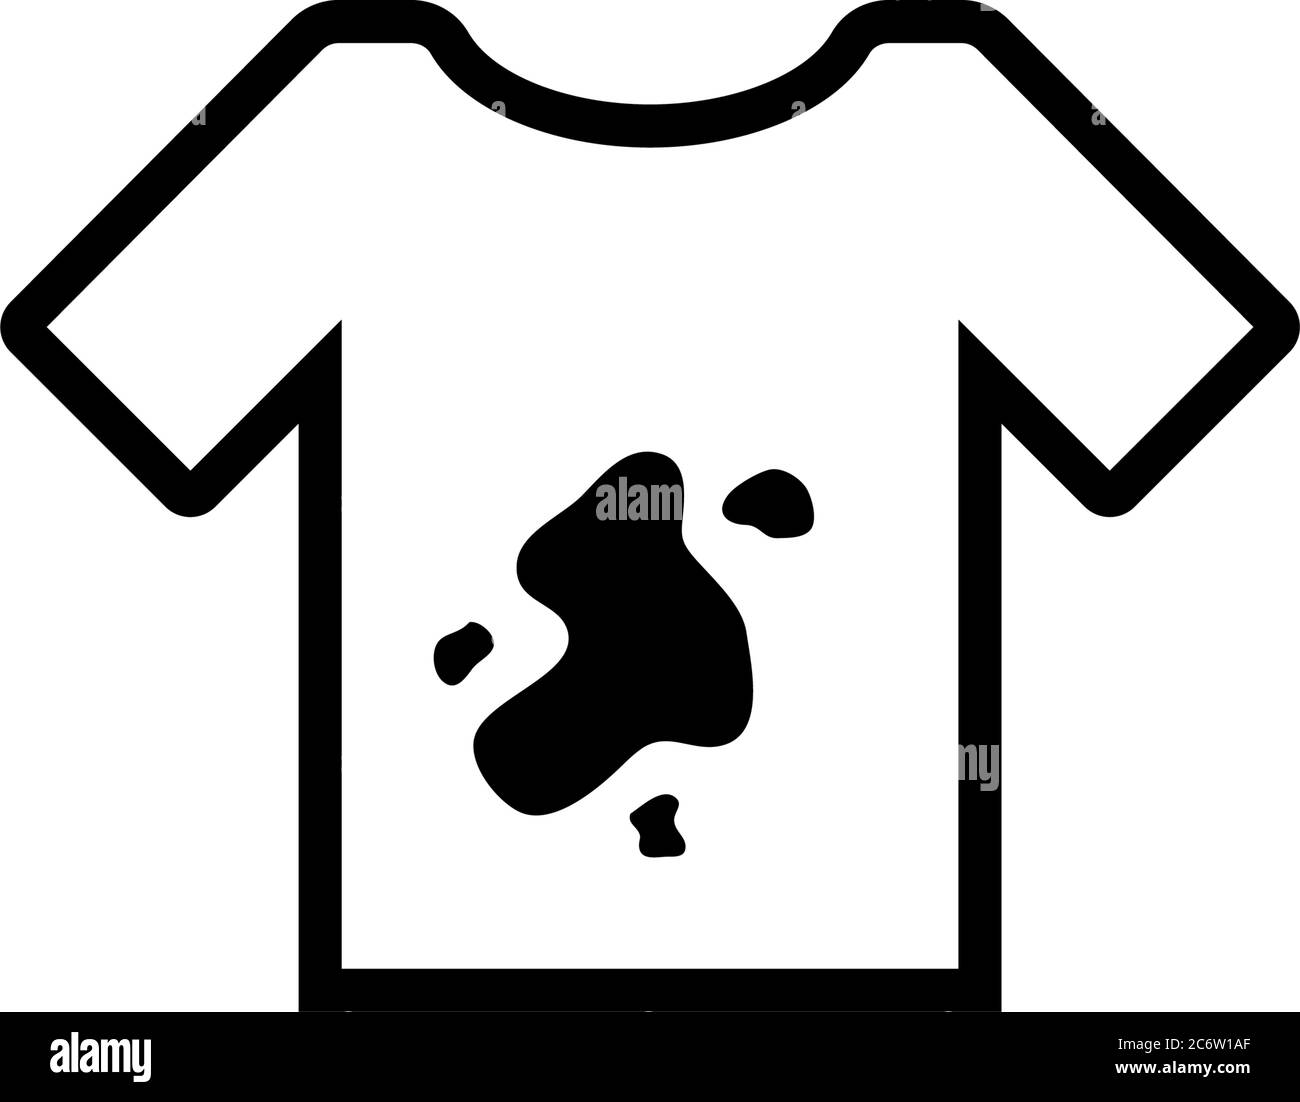 Schmutziges T-Shirt, T-Shirt mit Flecken Schmutz. Abbildung des Symbols für  flache Vektorgrafik. Einfaches schwarzes Symbol auf weißem Hintergrund.  Schmutziges T-Shirt, T-Shirt mit Flecken Schmutz s Stock-Vektorgrafik -  Alamy